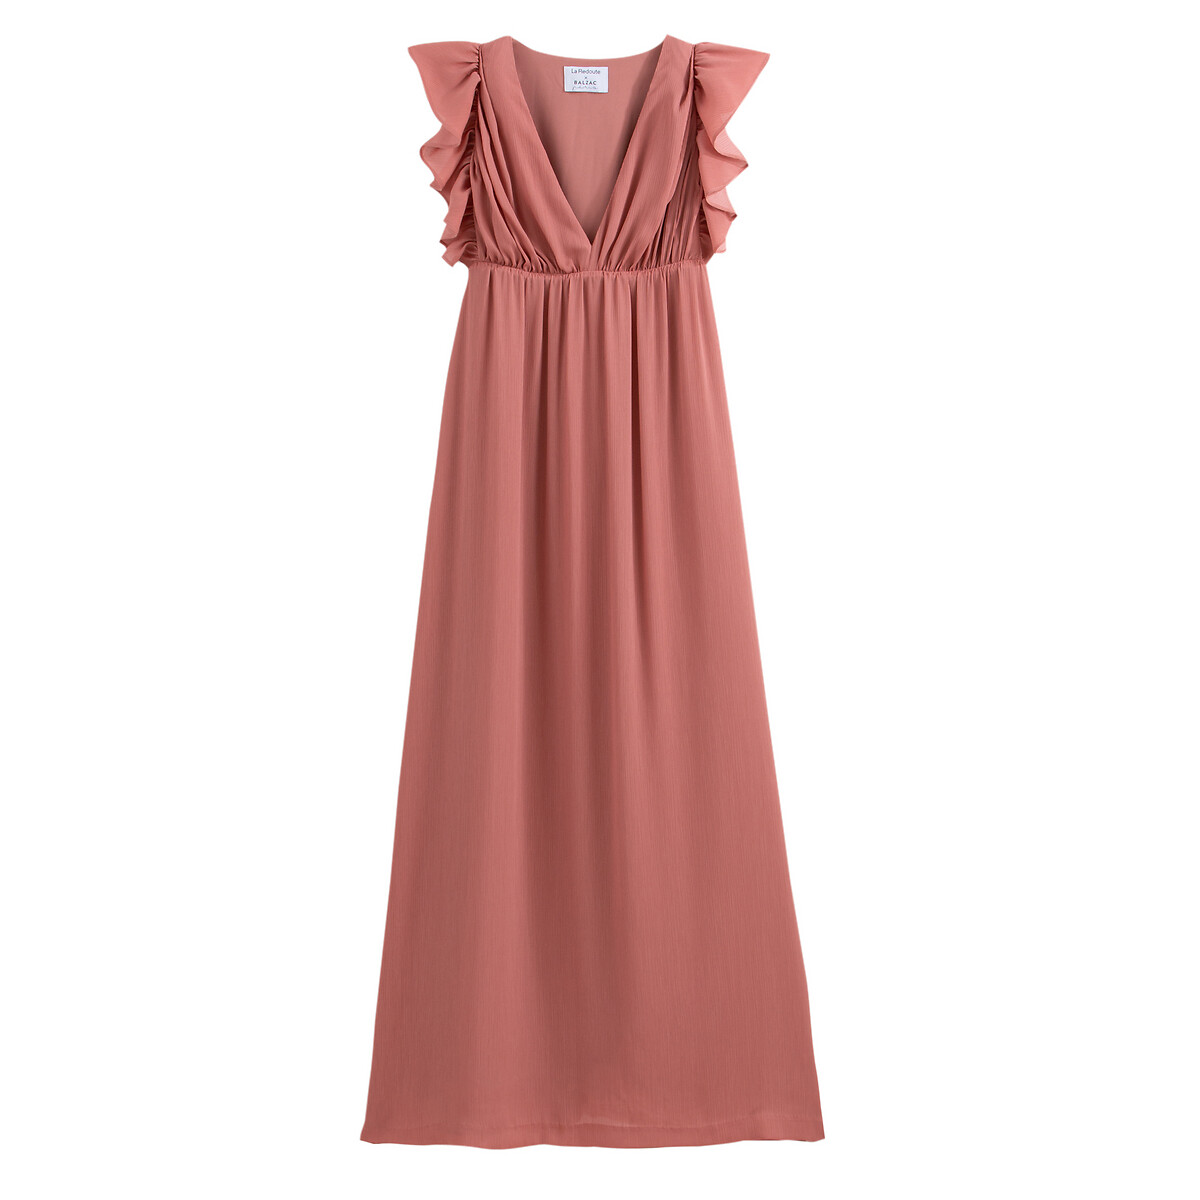 Платье La Redoute Длинное без рукавов 36 (FR) - 42 (RUS) розовый, размер 36 (FR) - 42 (RUS) Длинное без рукавов 36 (FR) - 42 (RUS) розовый - фото 1